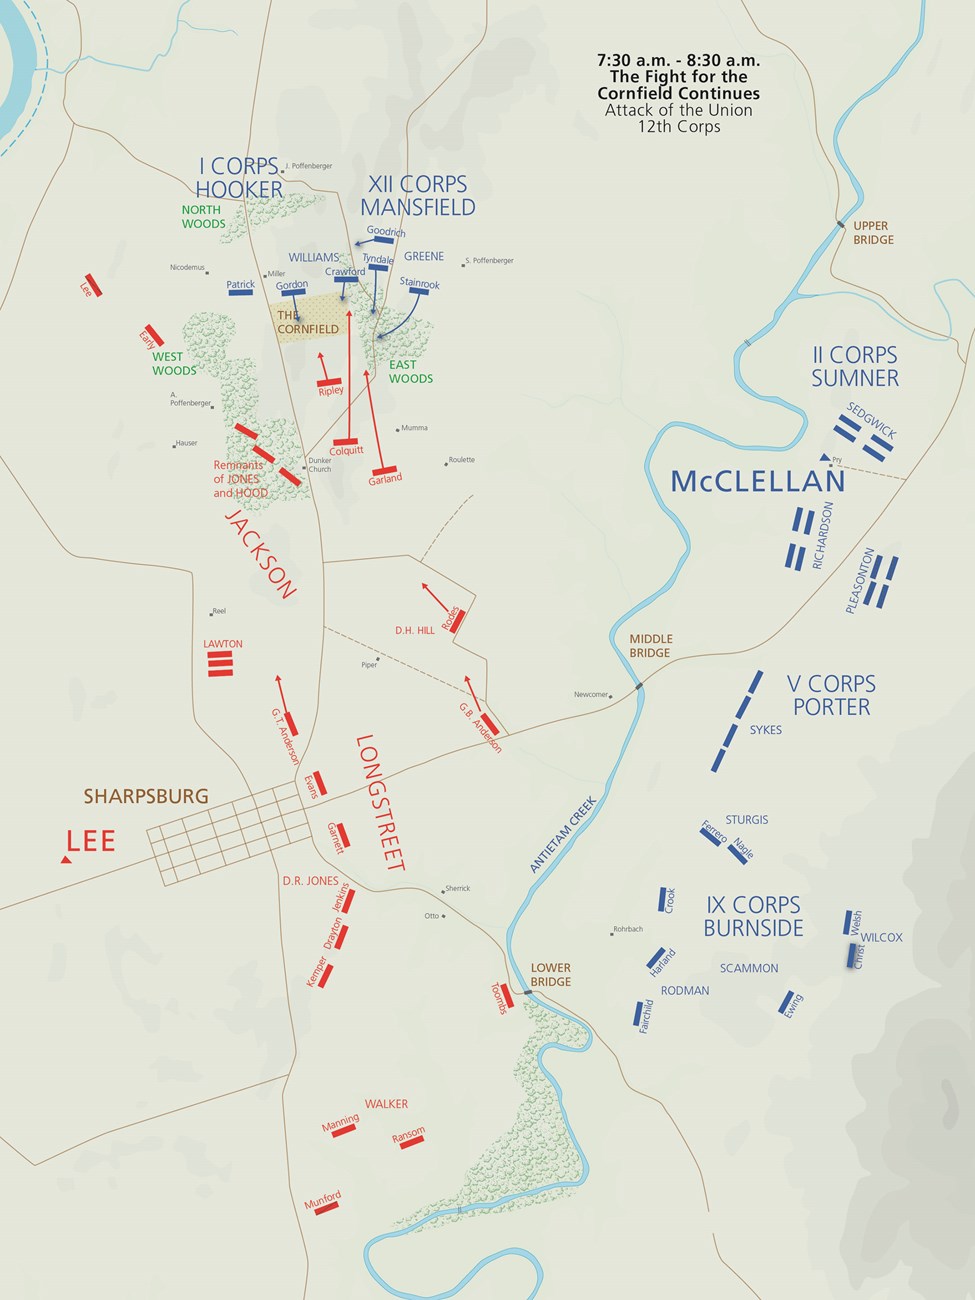 Antietam Battle Map 7:30-8:30 am